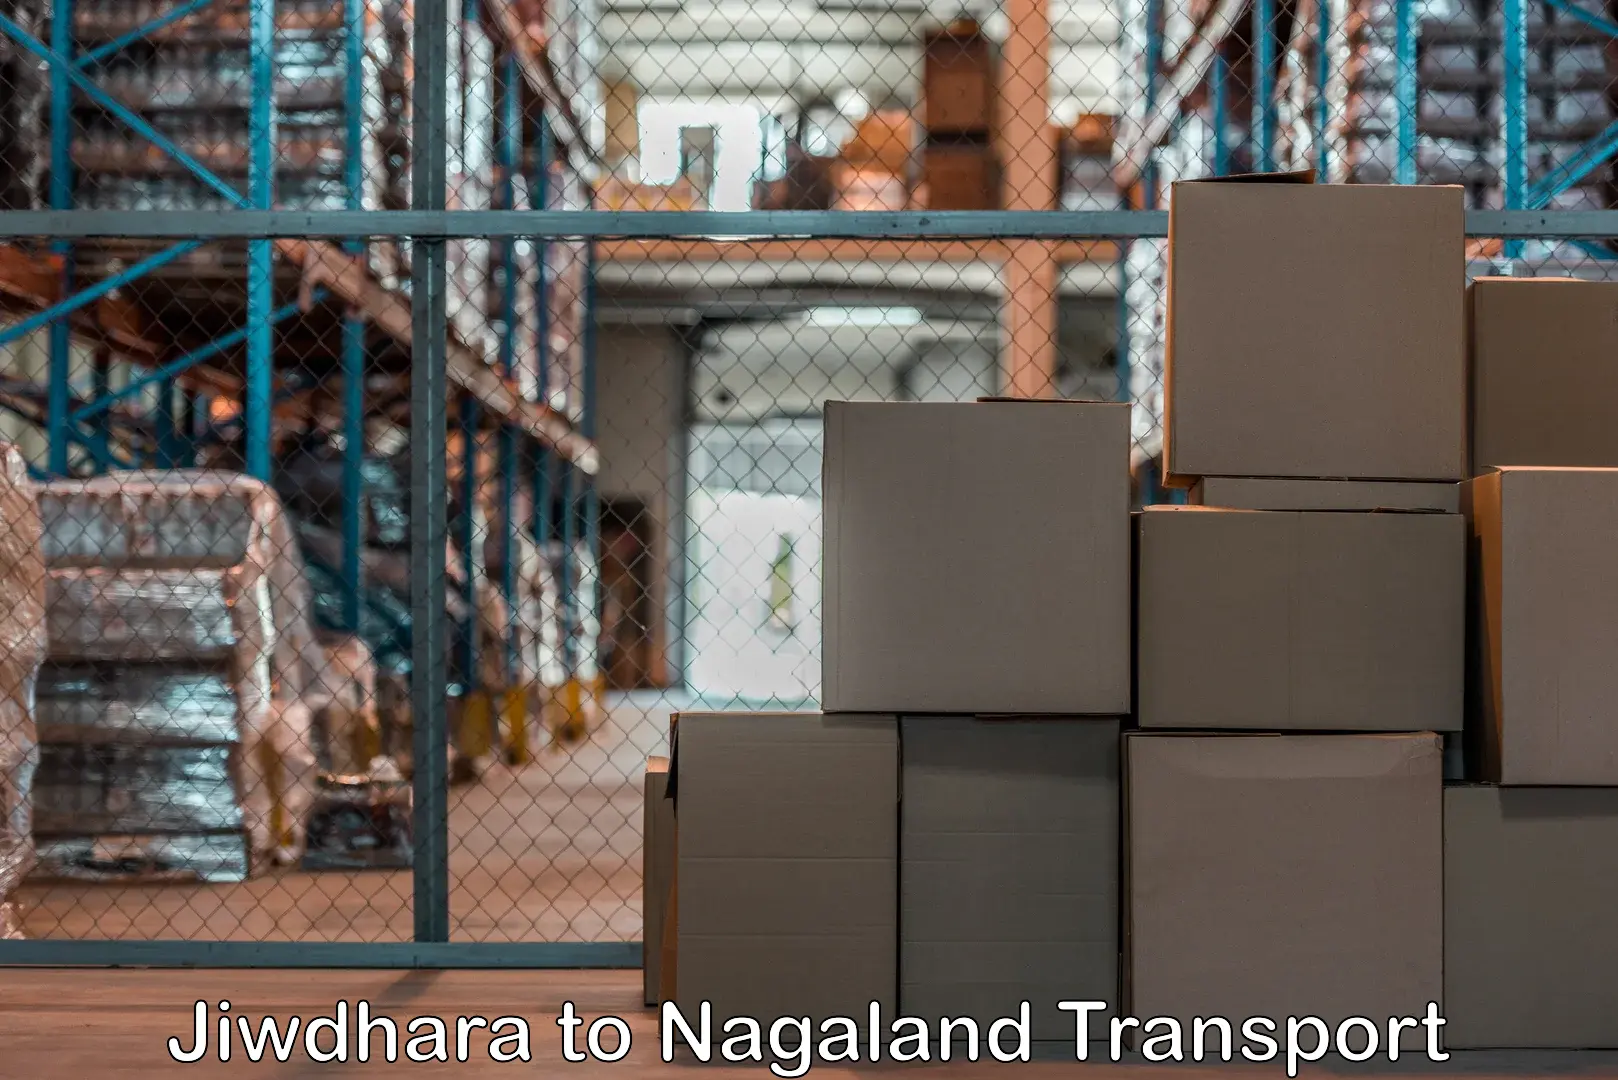 Transport in sharing Jiwdhara to Nagaland